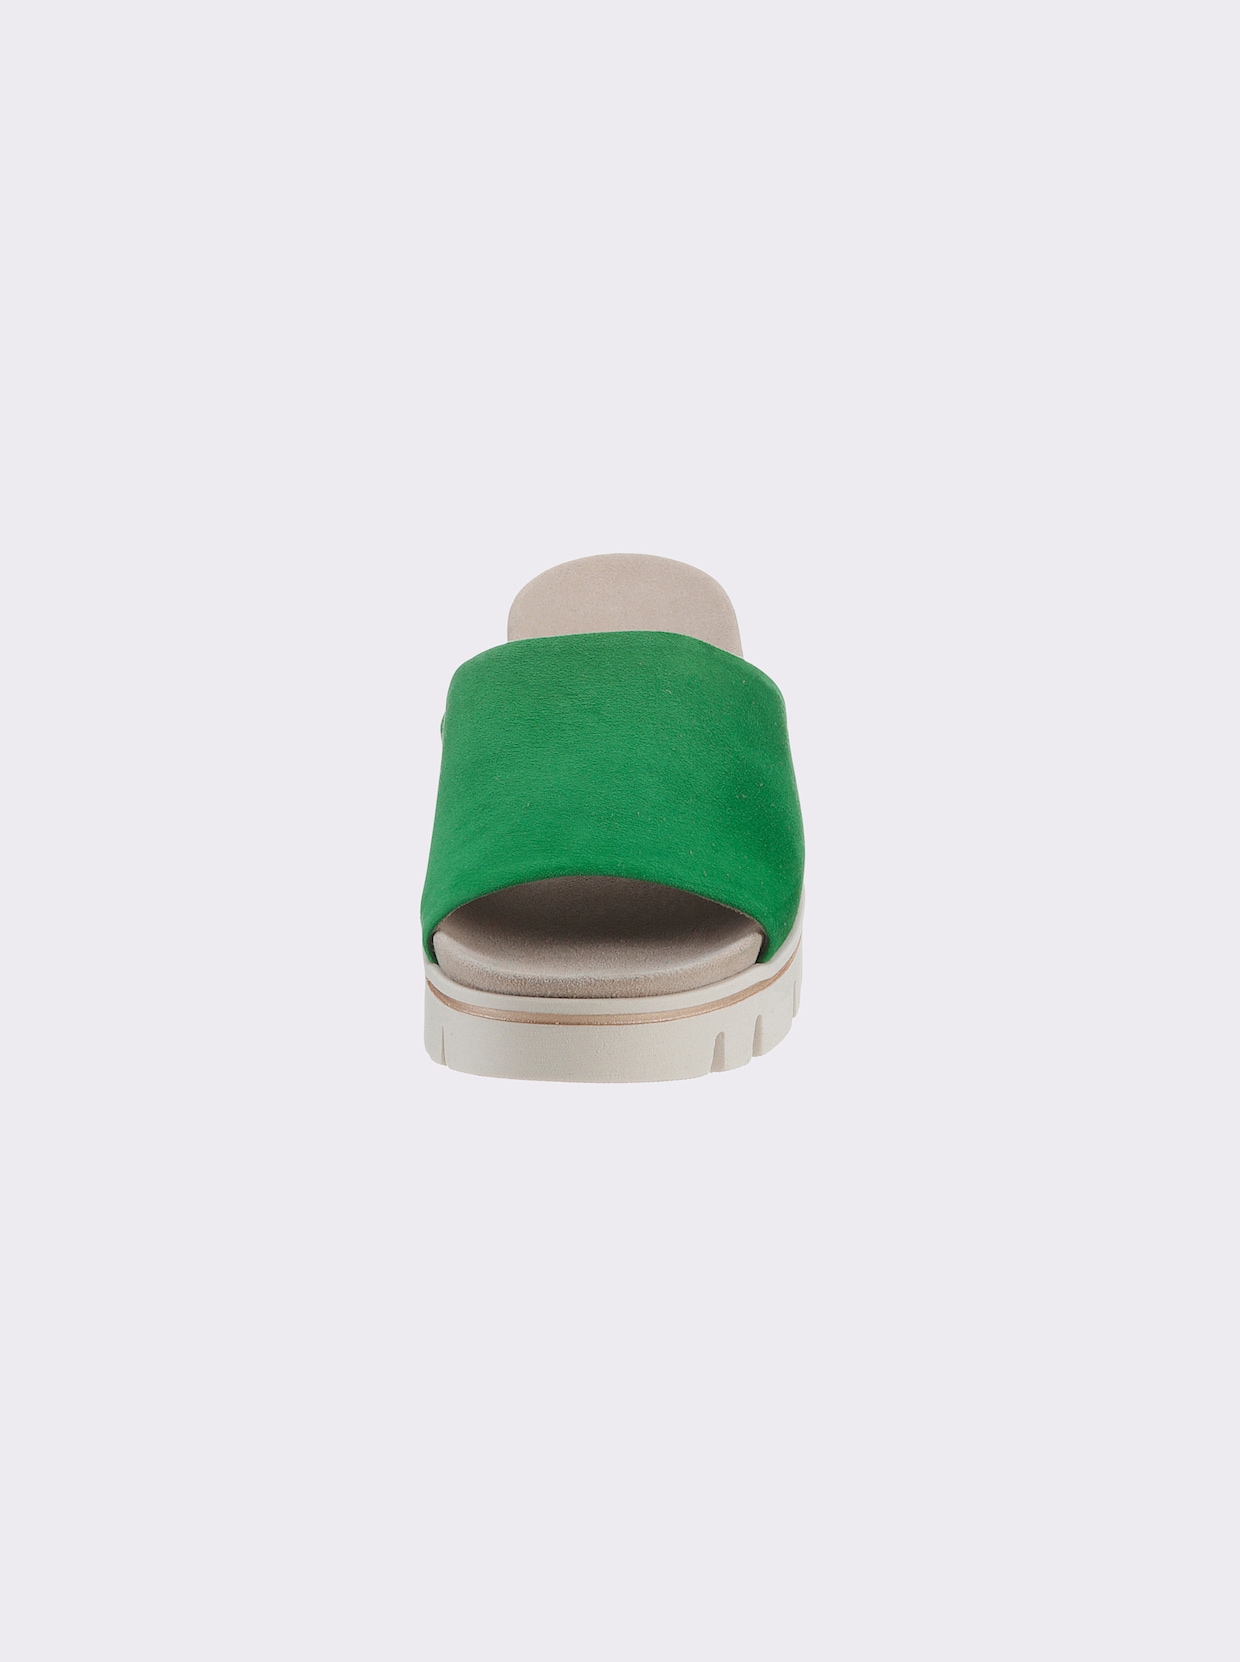 Gabor slippers - groen